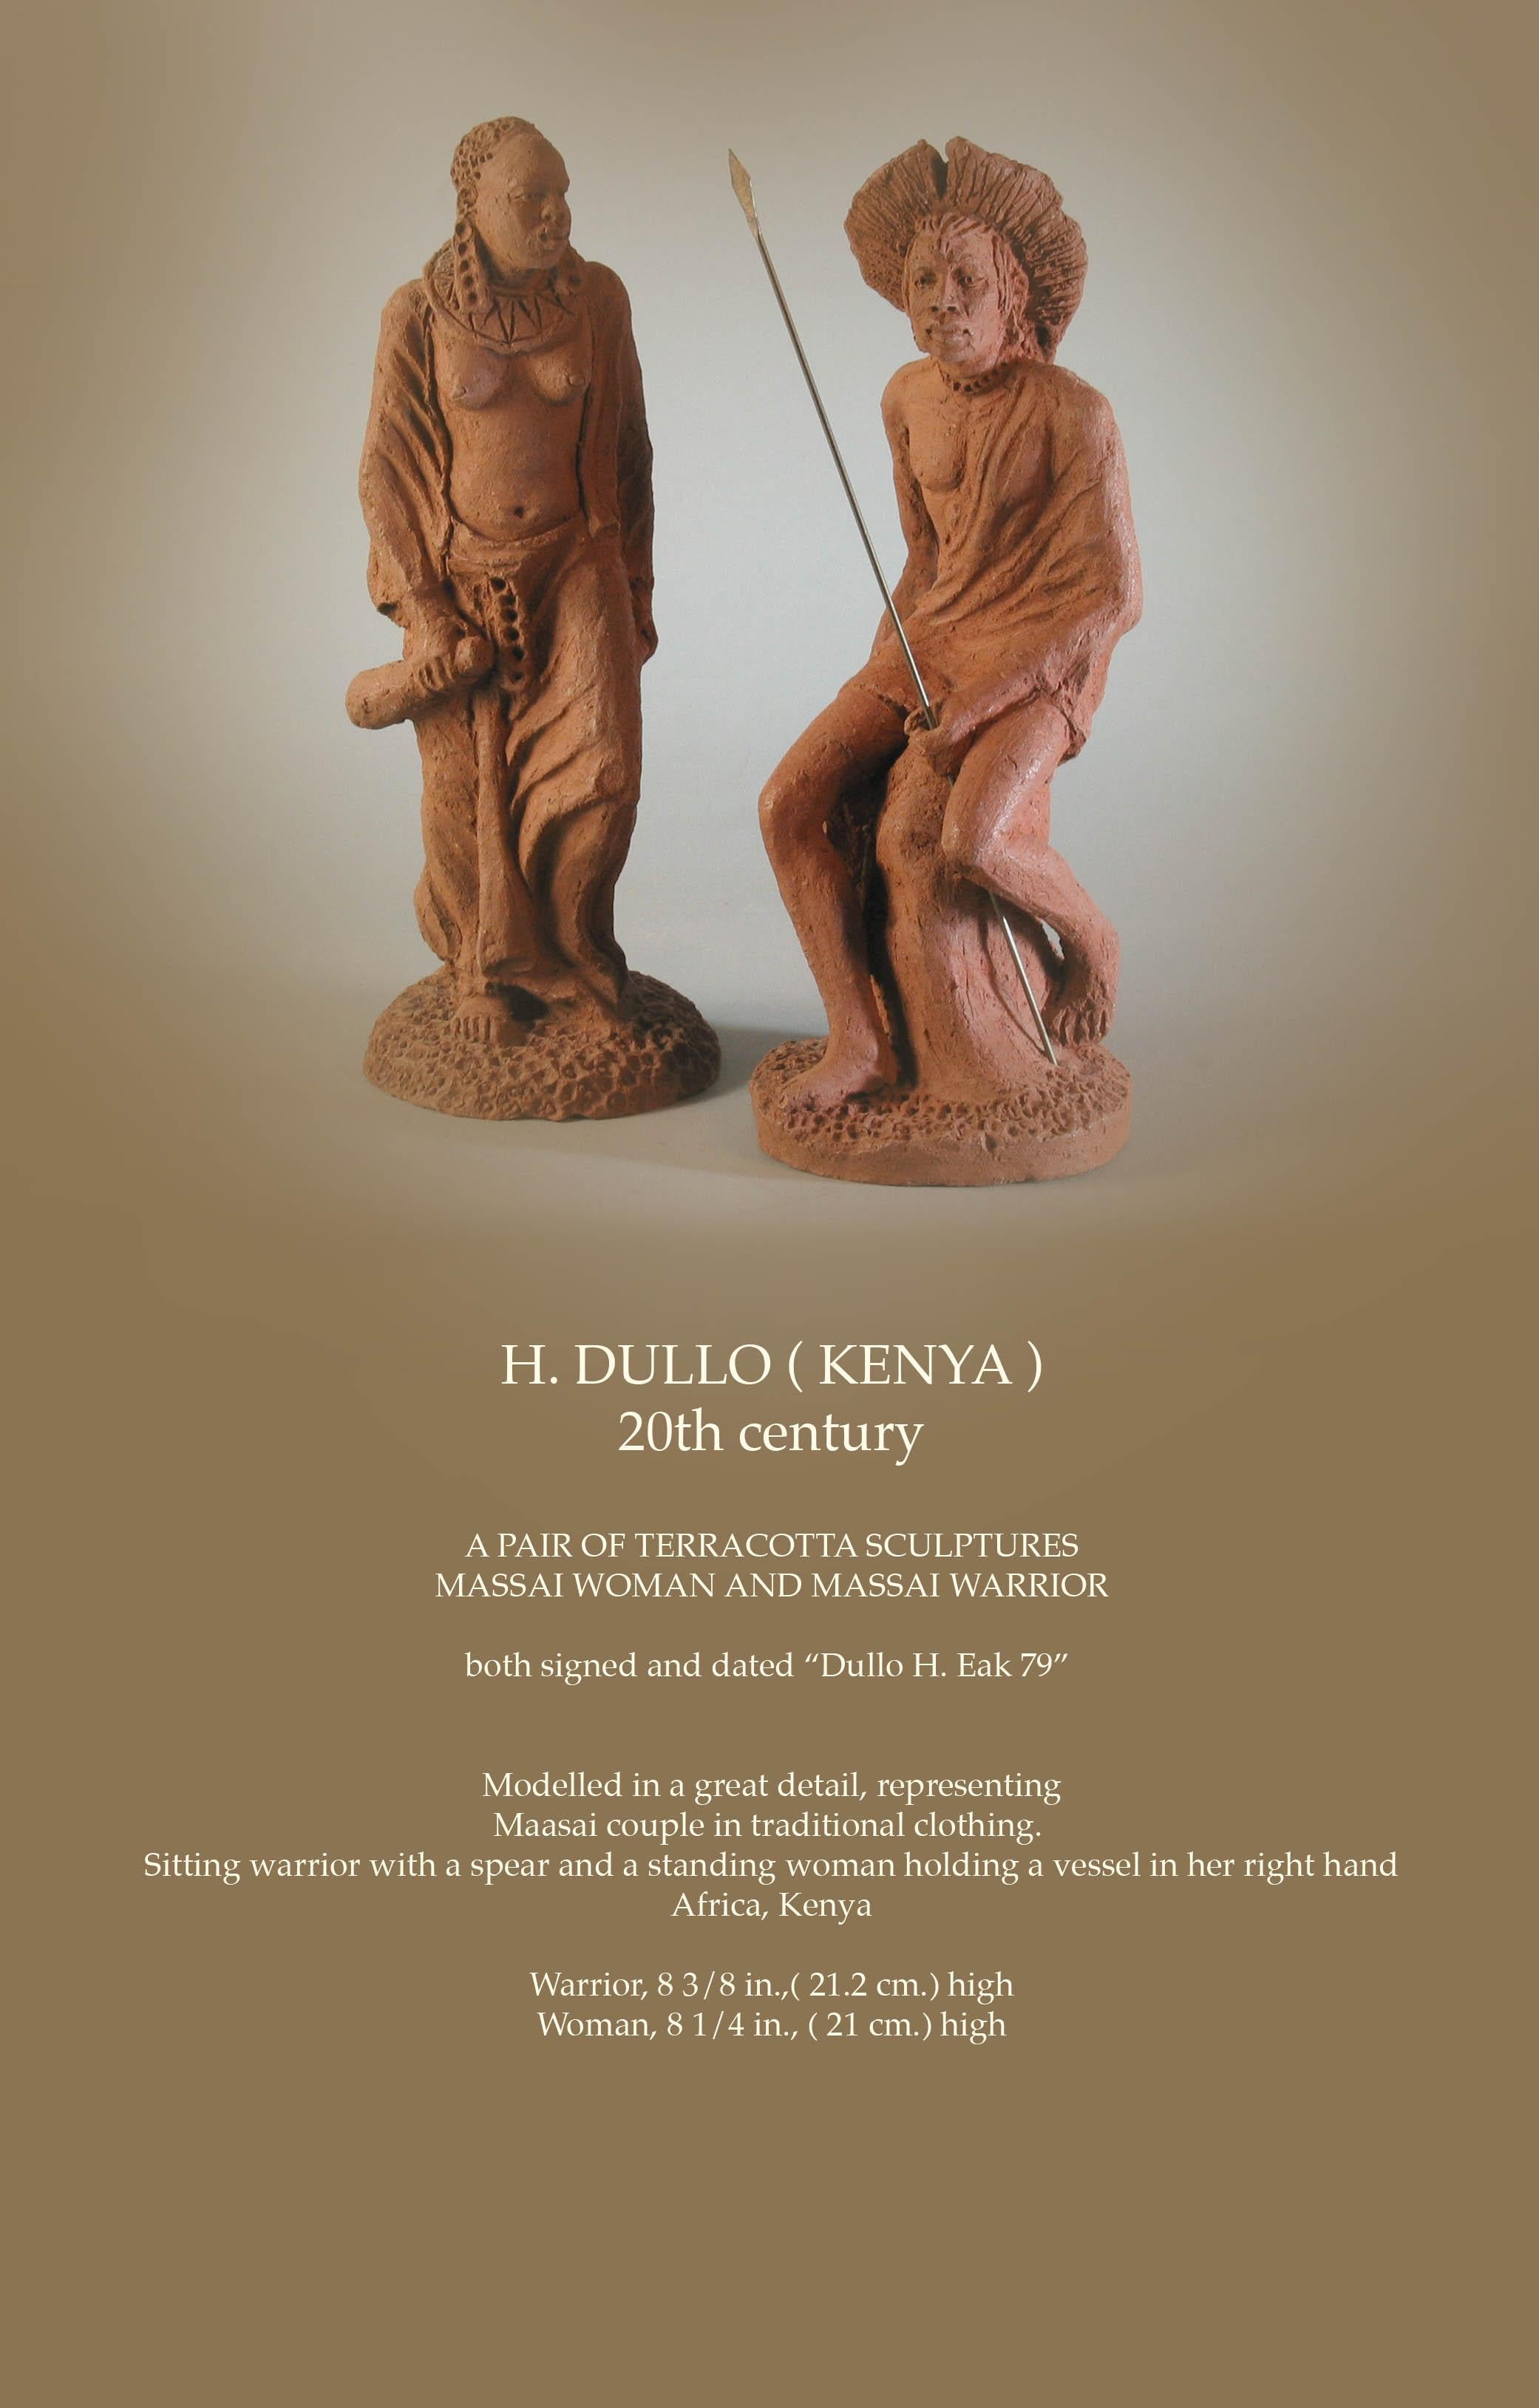 H. DULLO (KENIA),
20. Jahrhundert.

Ein Paar Terrakotta-Skulpturen
Massai-Frau und Massai-Krieger.

Beide signiert und datiert 